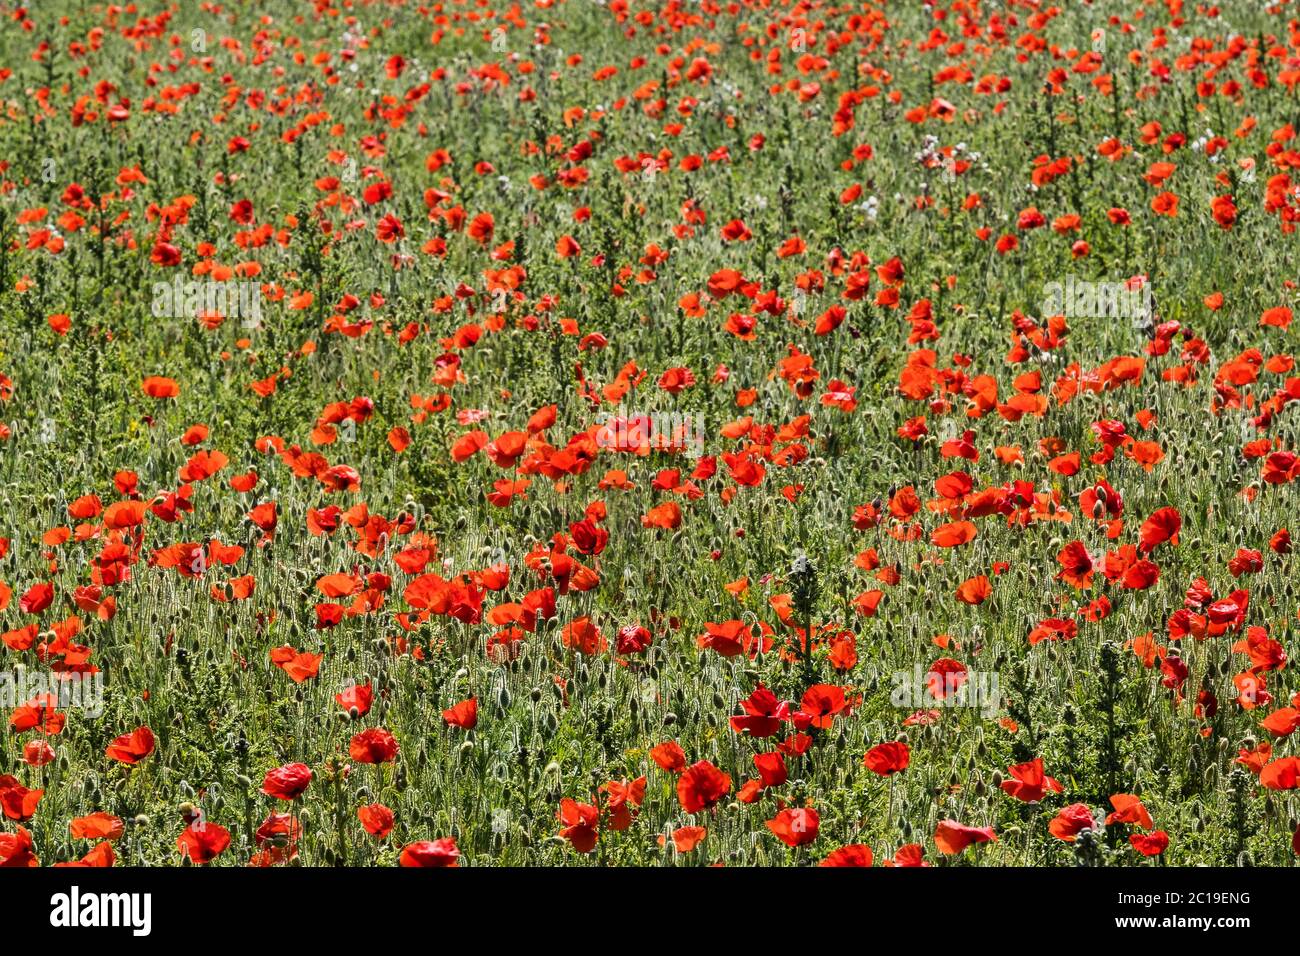 La vue spectaculaire des rhoeas de Poppies communes qui poussent dans un champ surplombant Polly Porth Joke dans le cadre du projet des champs arables sur Pentire Banque D'Images